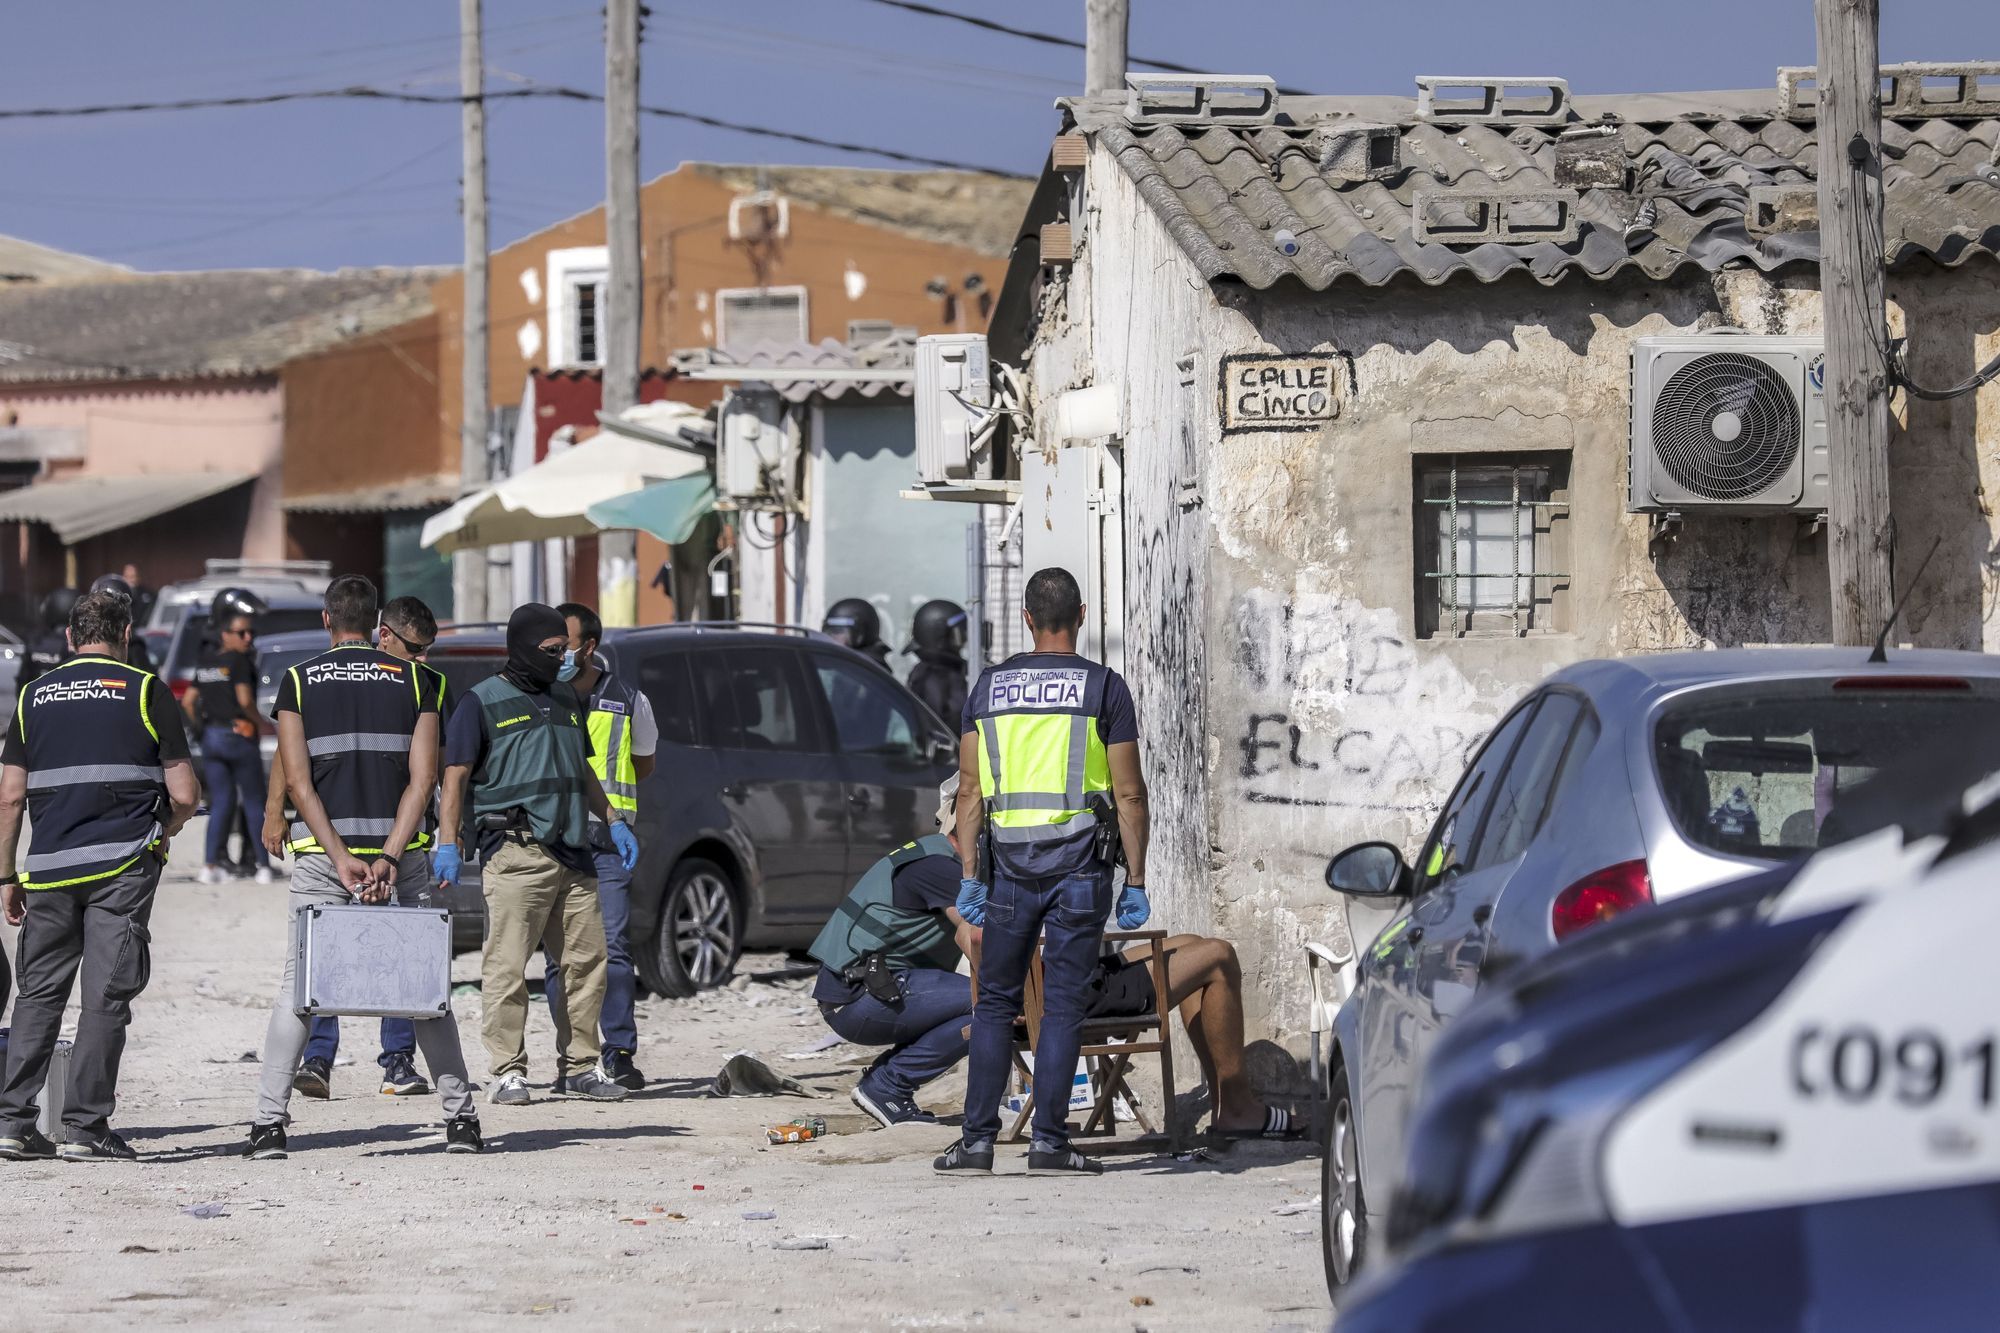 Schlag gegen Drogenclan in Son Banya - Die Blitzrazzia auf Mallorca in Bildern